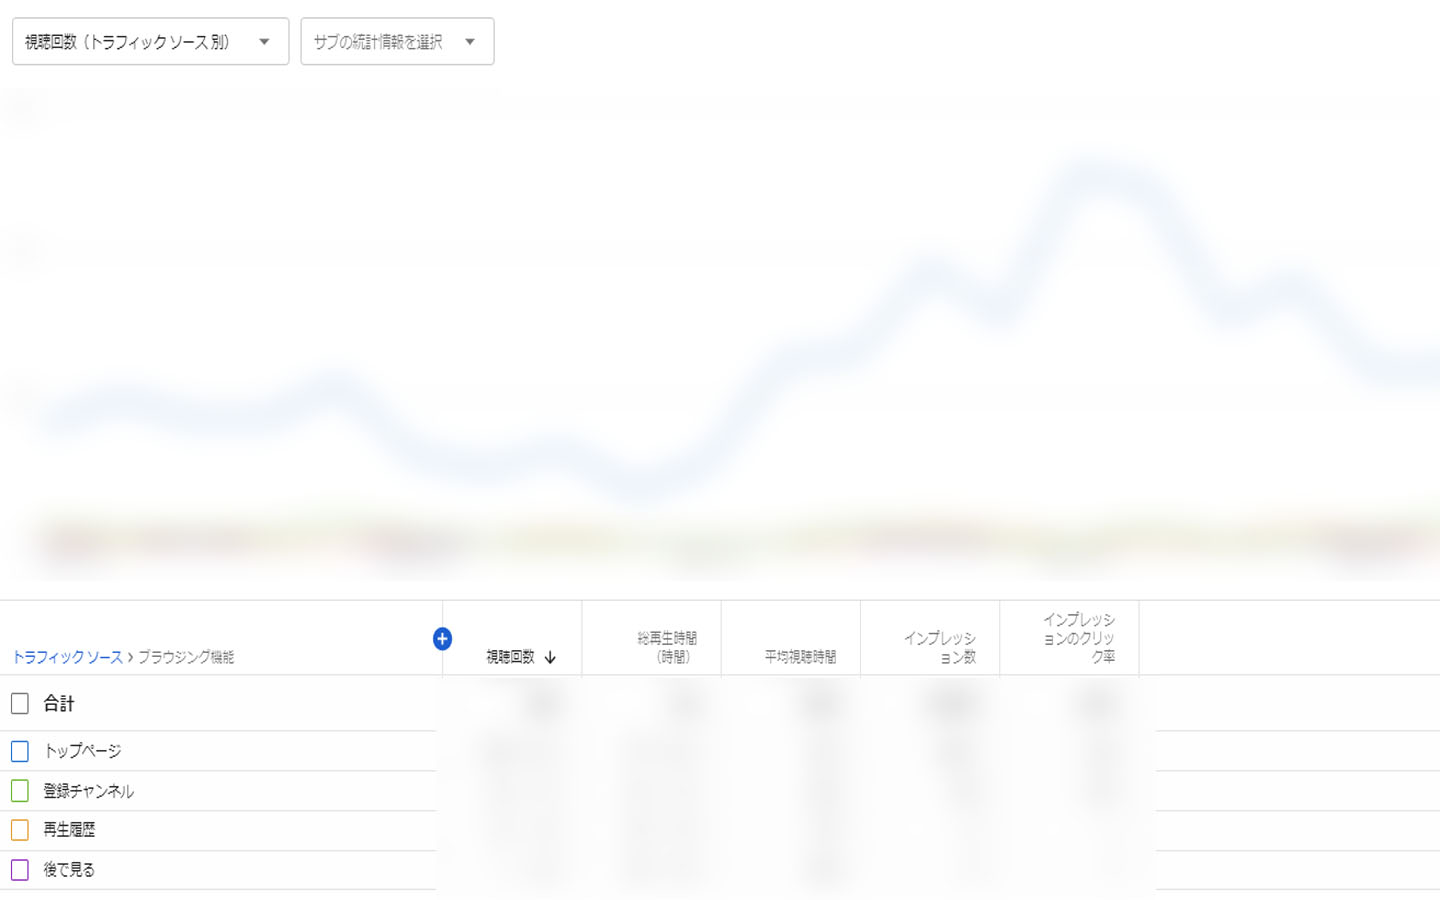 ビジネスパーソン向け Youtubeアナリティクス 分析の基本 画像付きでわかりやすく解説 データのじかん